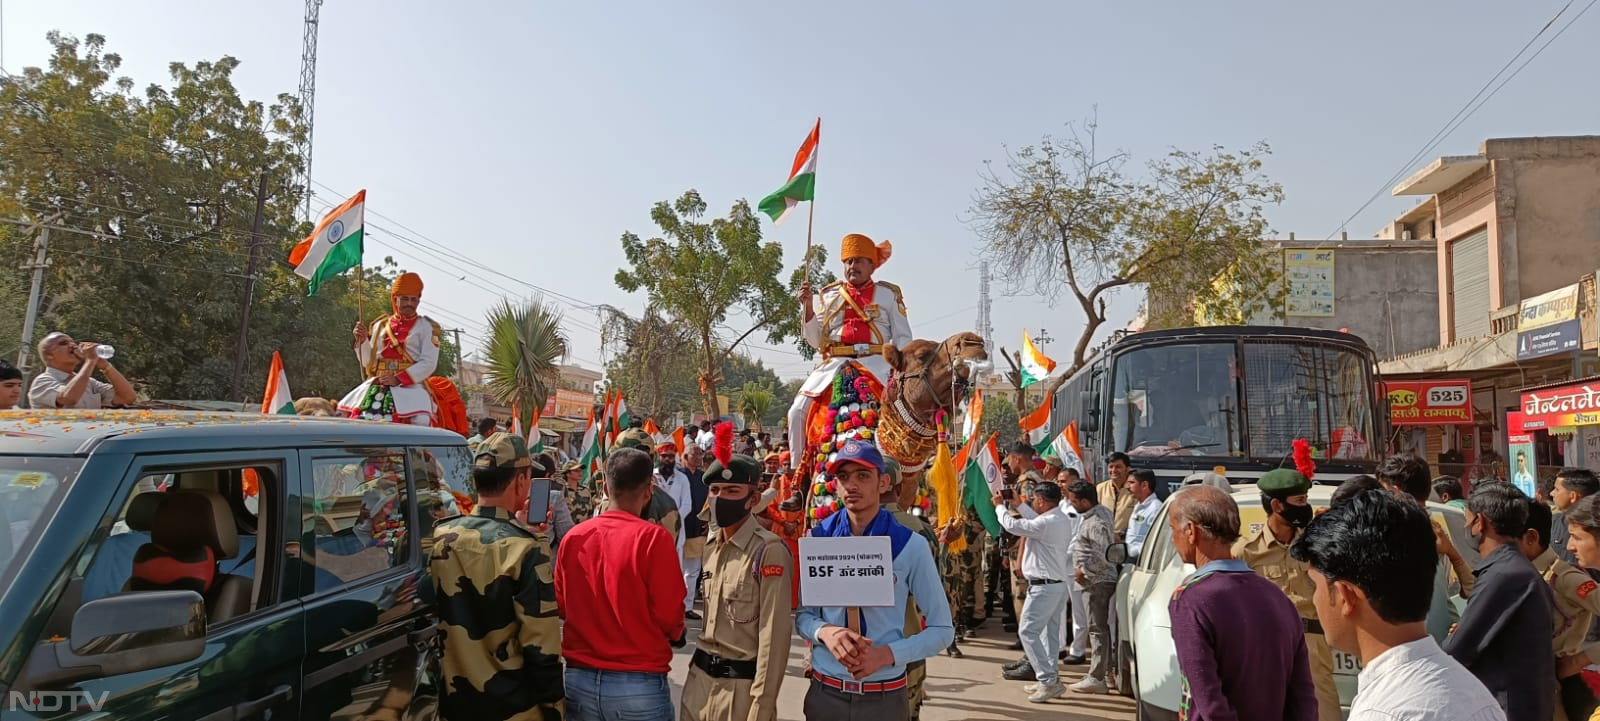 शोभायात्रा में सीमा सुरक्षा बल के बैंड ने राजस्थानी गीतों की धुनों पर बिखेरी स्वर लहरियां